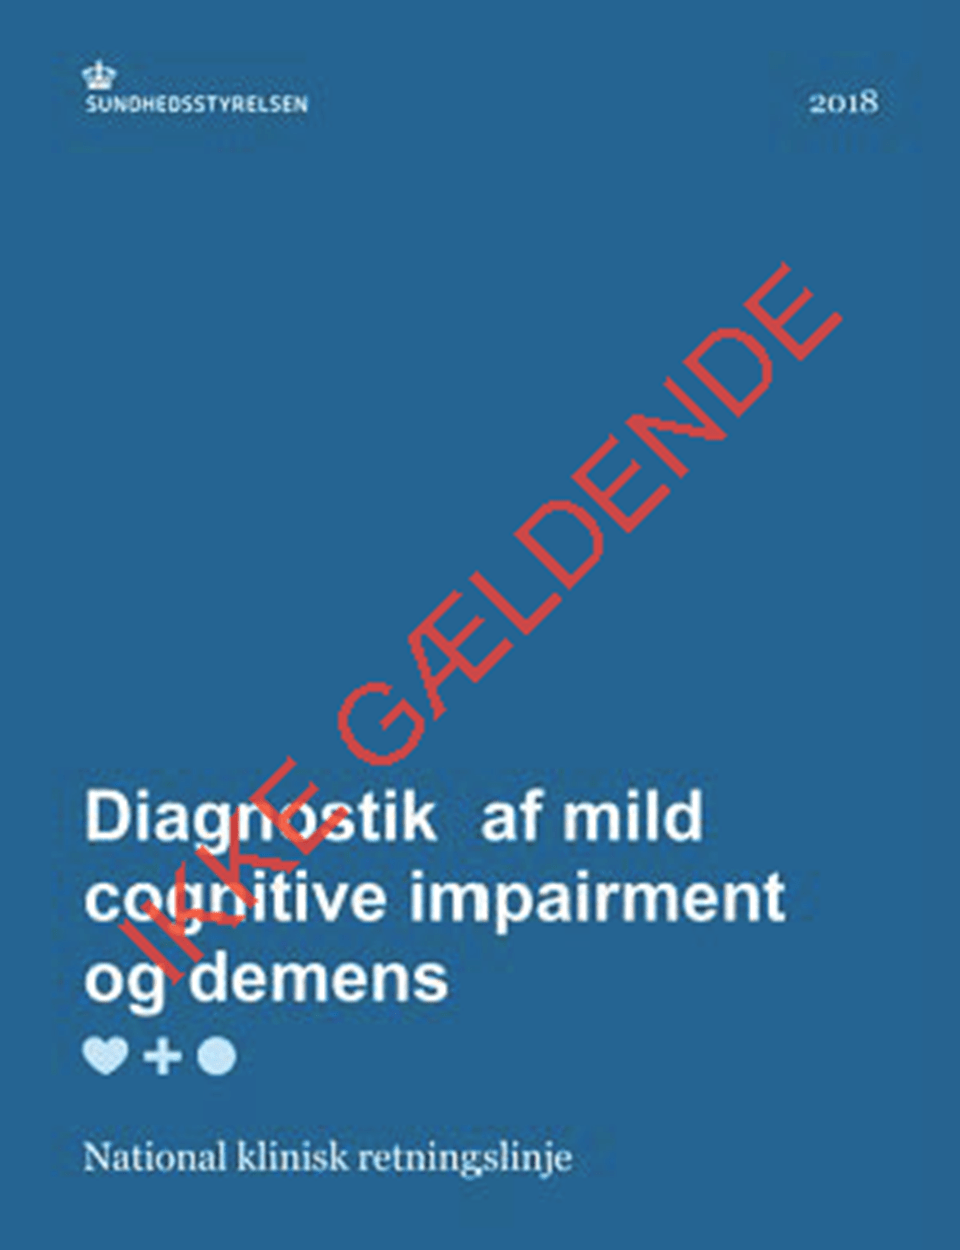 NKR: Diagnostik af mild cognitive impairment og demens